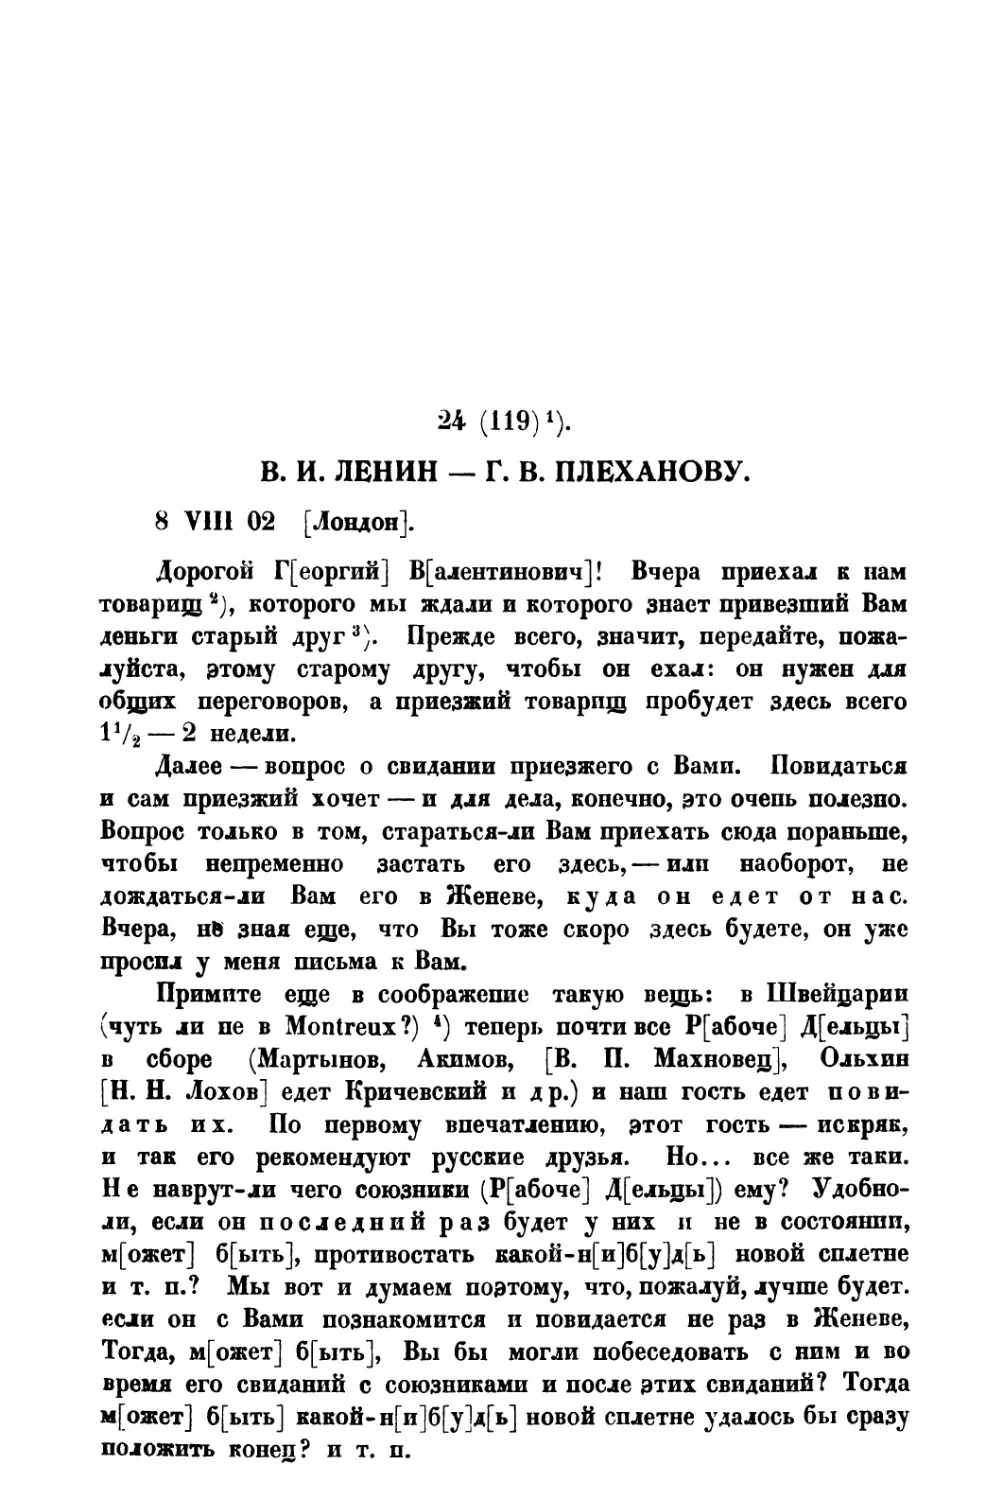 24. » Г. В. Плеханову от 8 VIII 1902 г